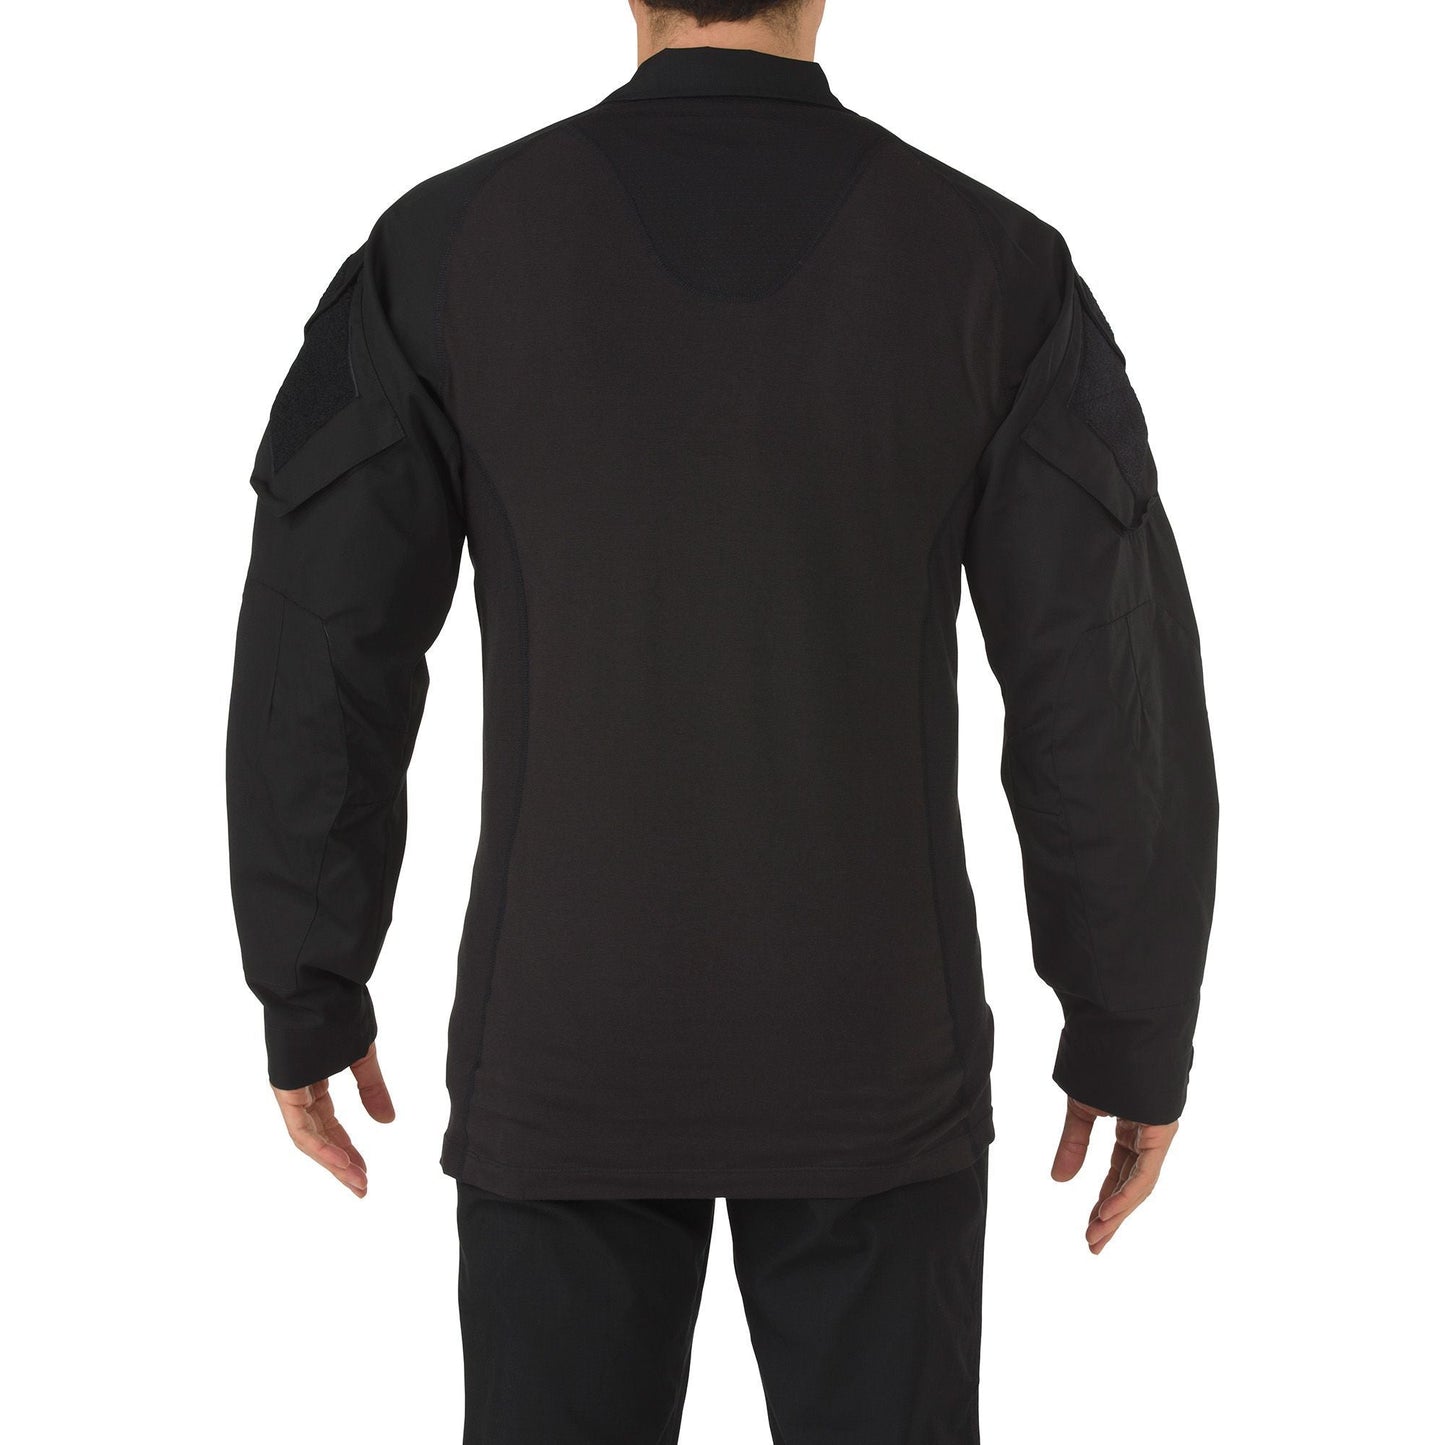 5.11 Tactical Rapid Assault Shirt Black Tactical Distributors Ltd New Zealand